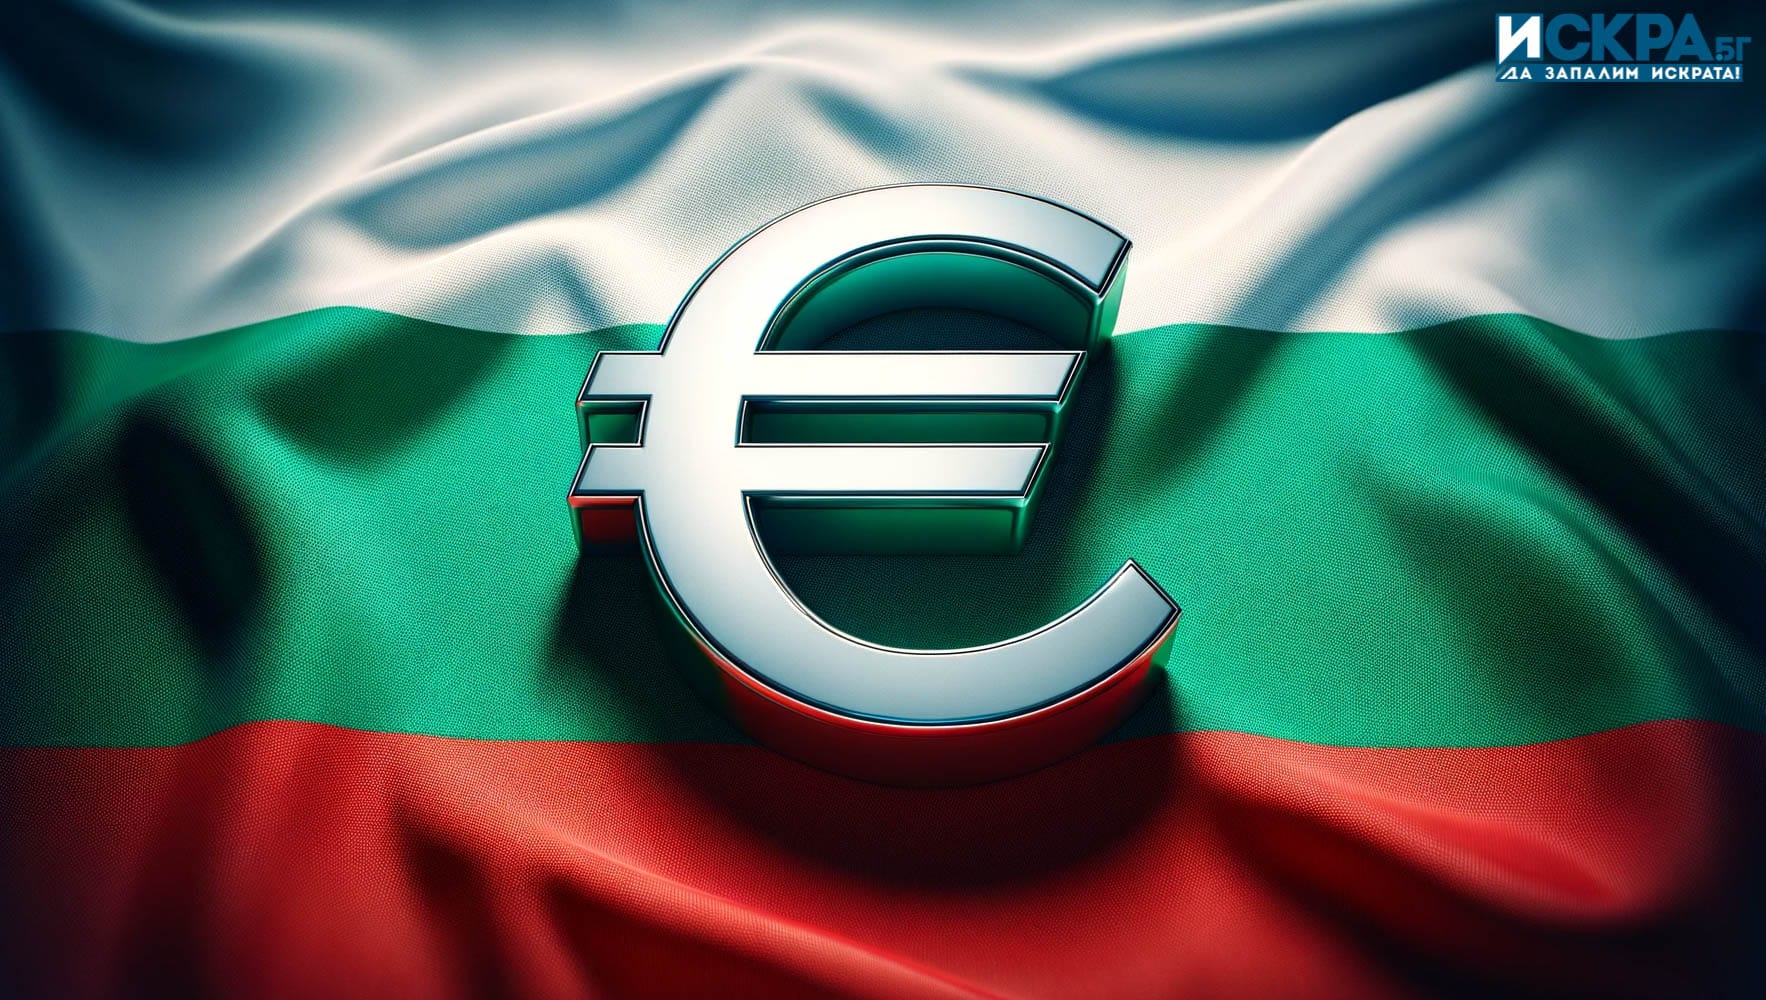 Присъединяването към единната европейска валута е сред основните приоритети на